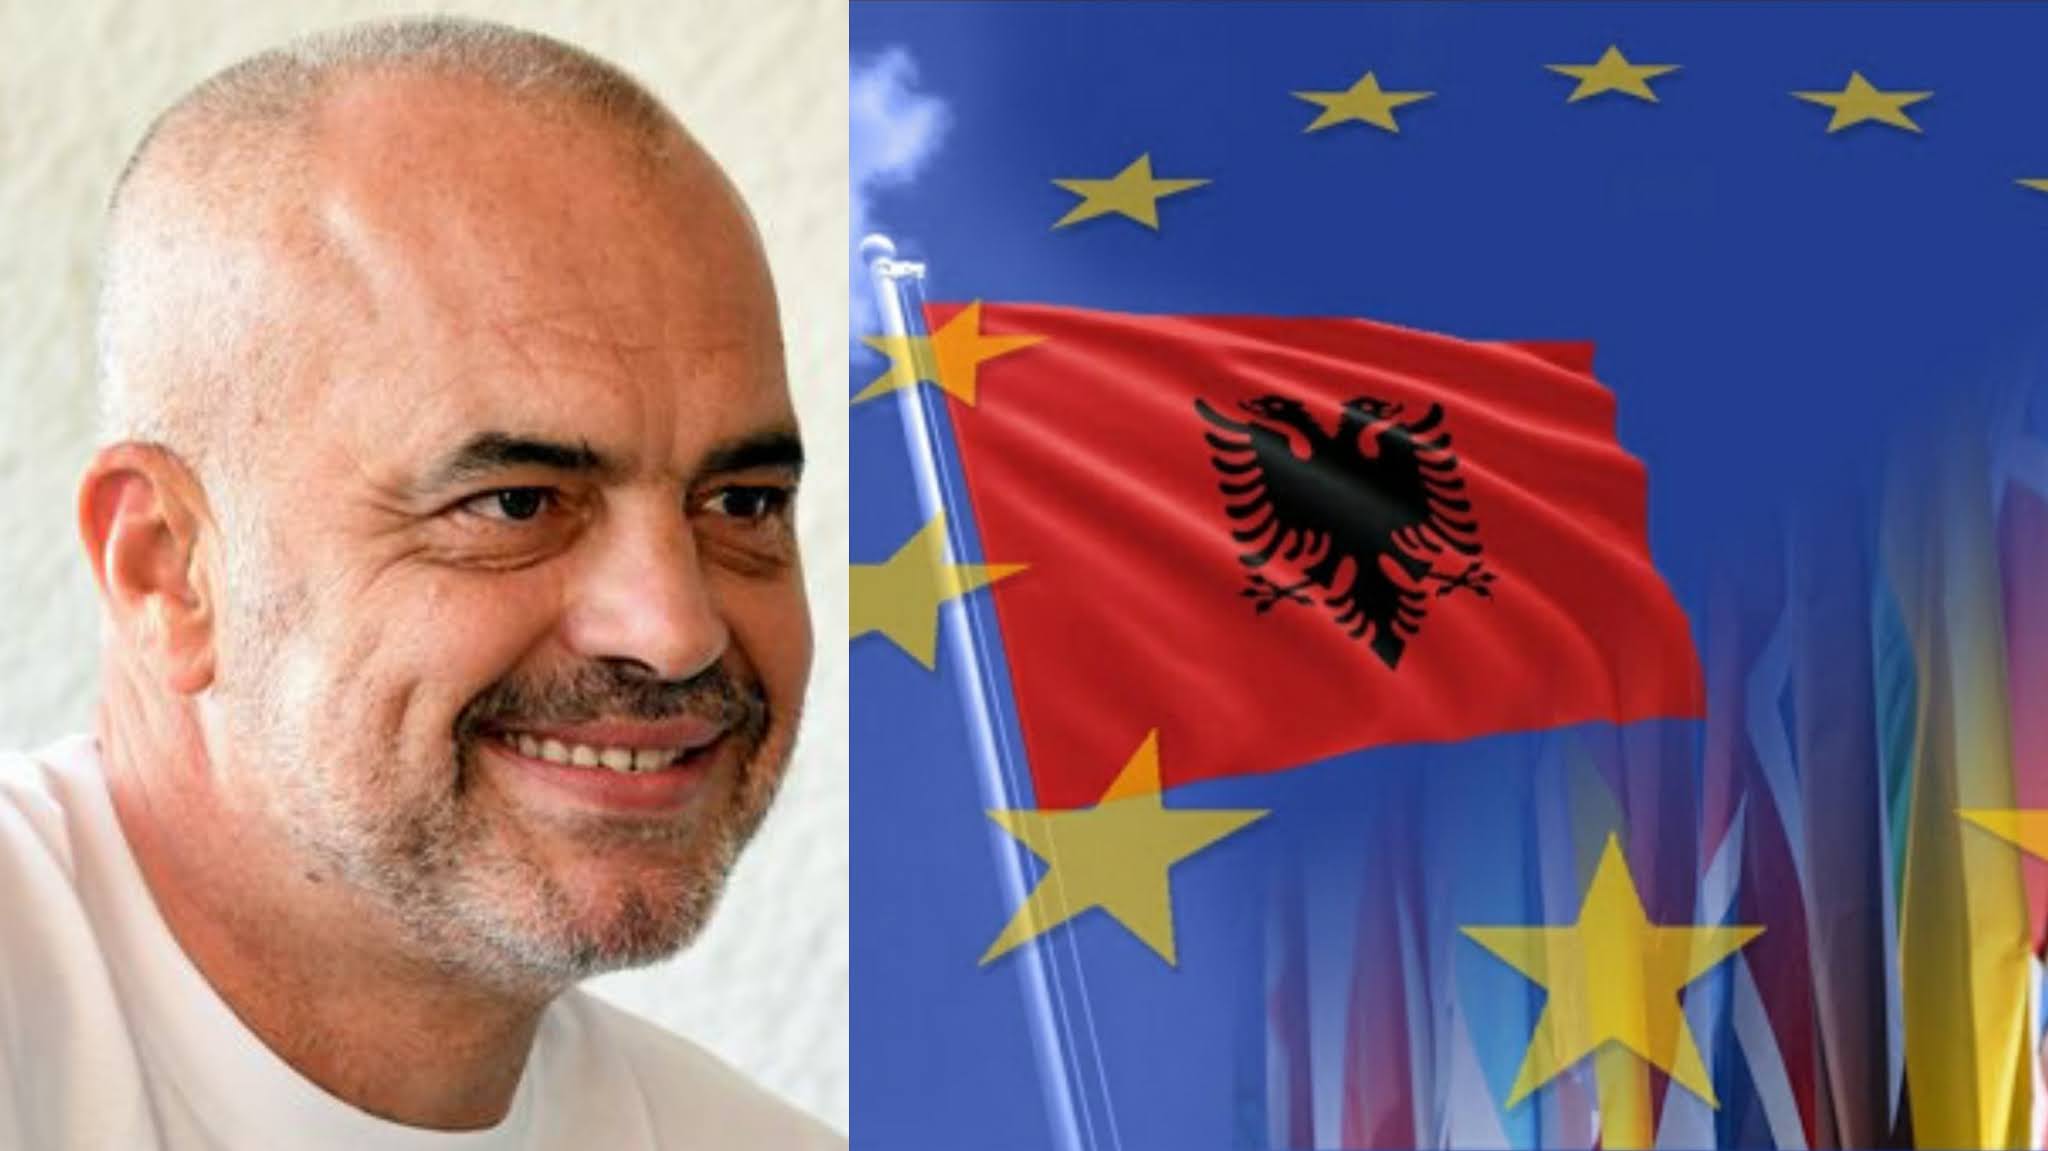 Shqipëria është gati/ E Fundit: BE jep një “PO” të madhe Ramës, brenda pak ditësh…